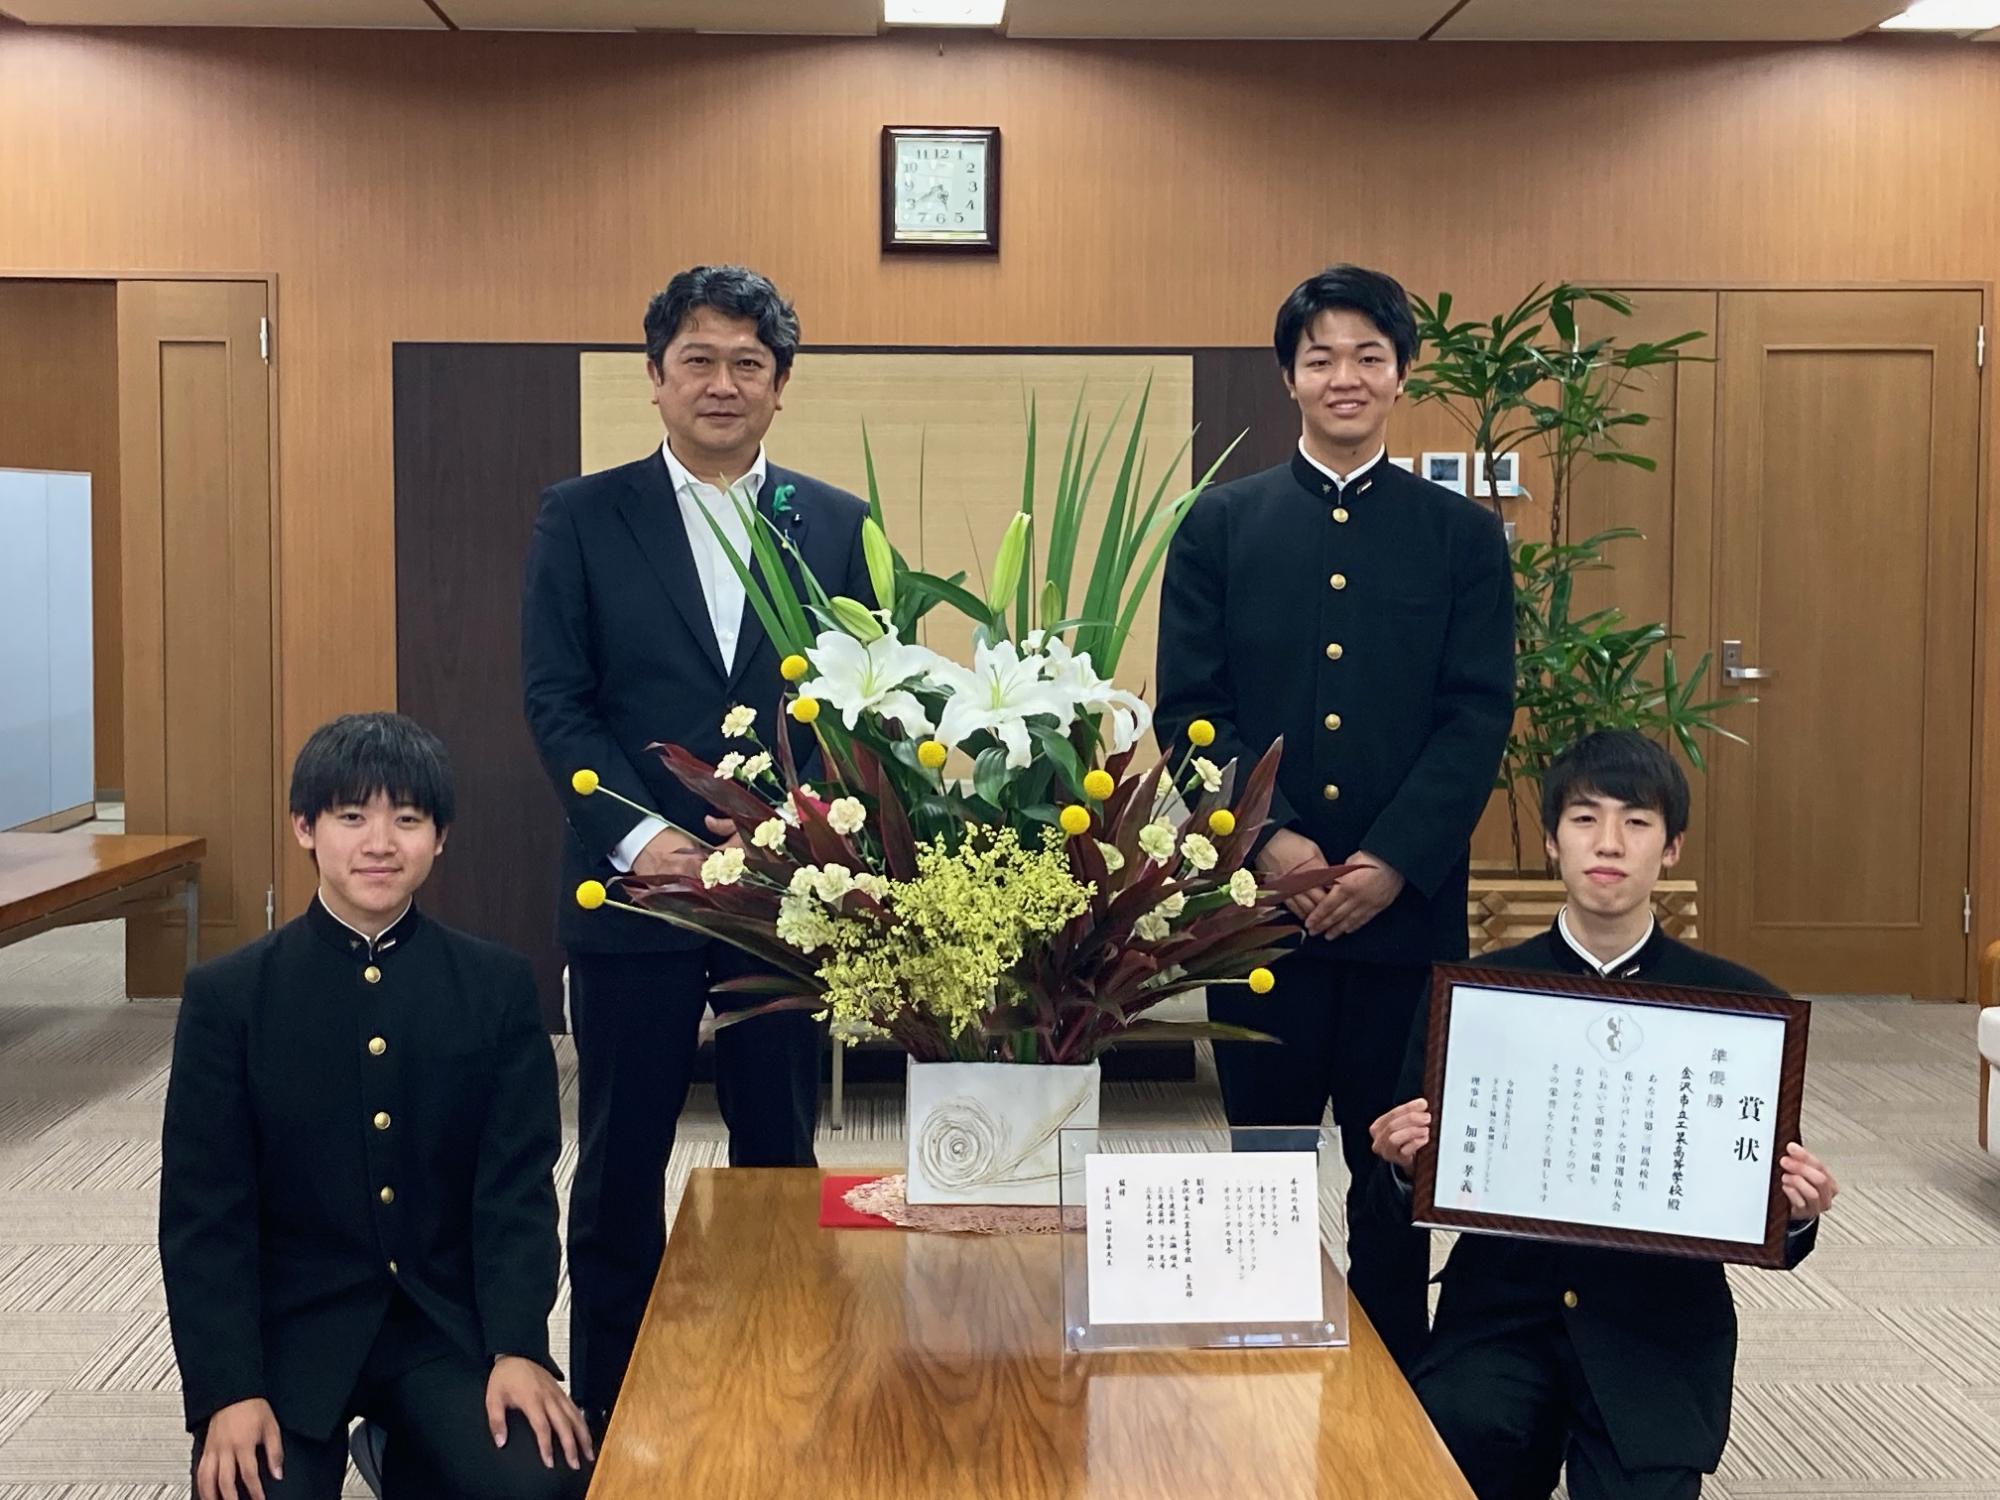 金沢市立工業高校の生花部員チームFirst（ファースト）と市長の様子